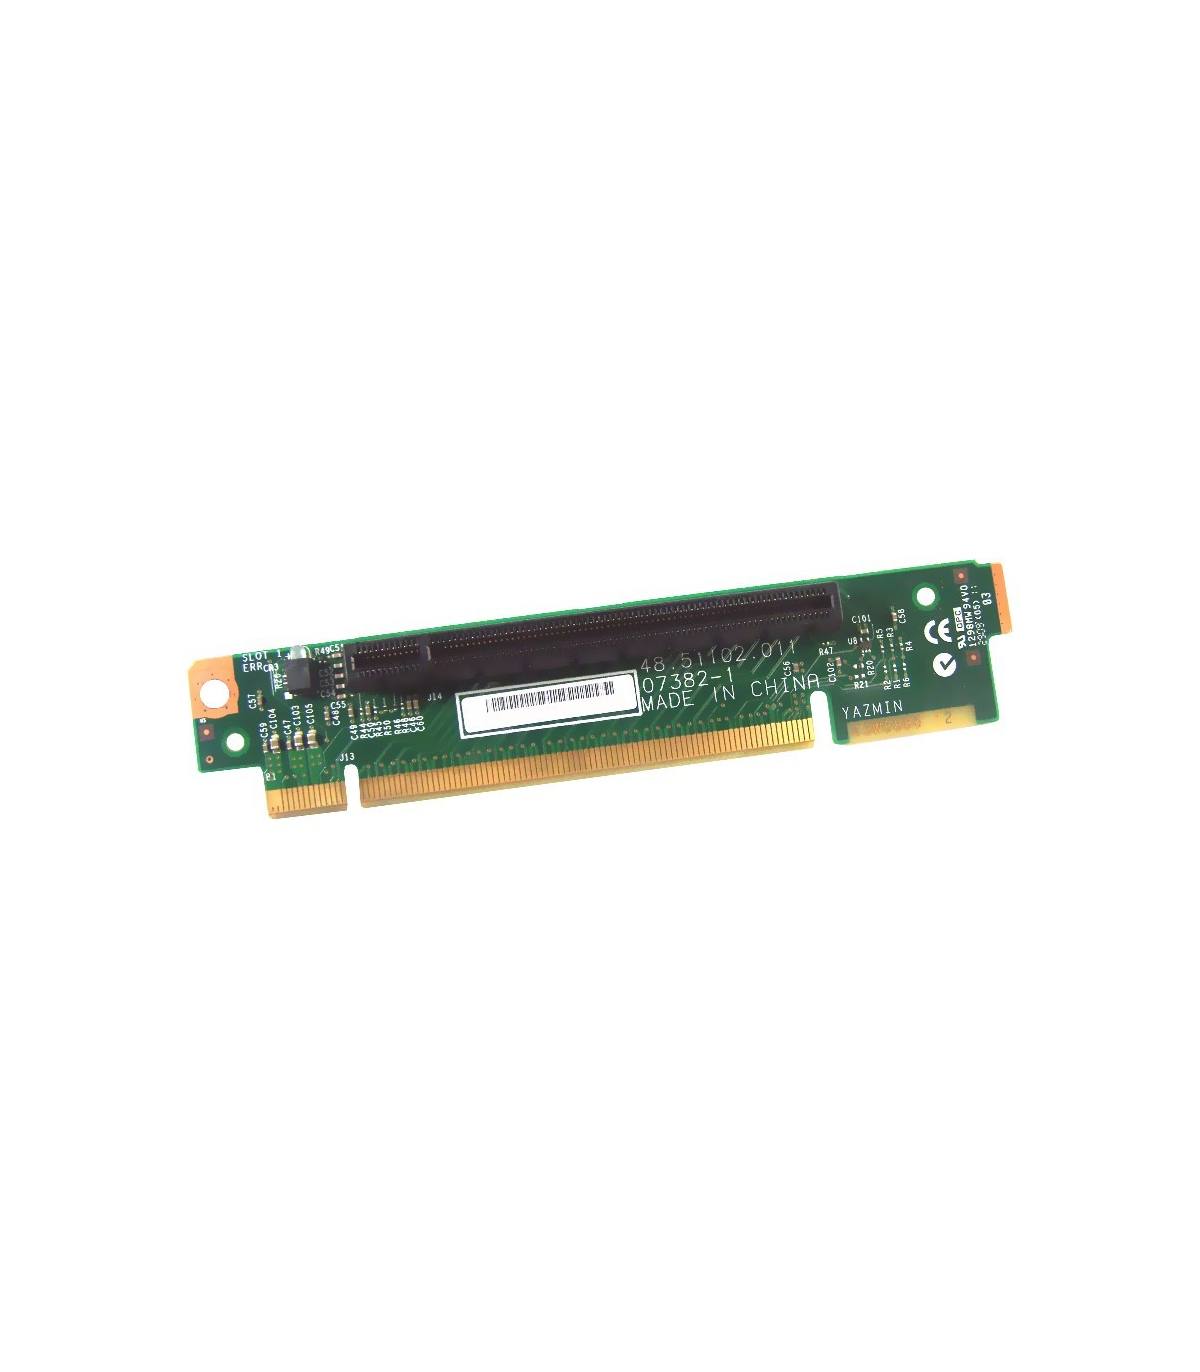 IBM x3550 M2/M3 RISER CARD PCIe x16 43V7066